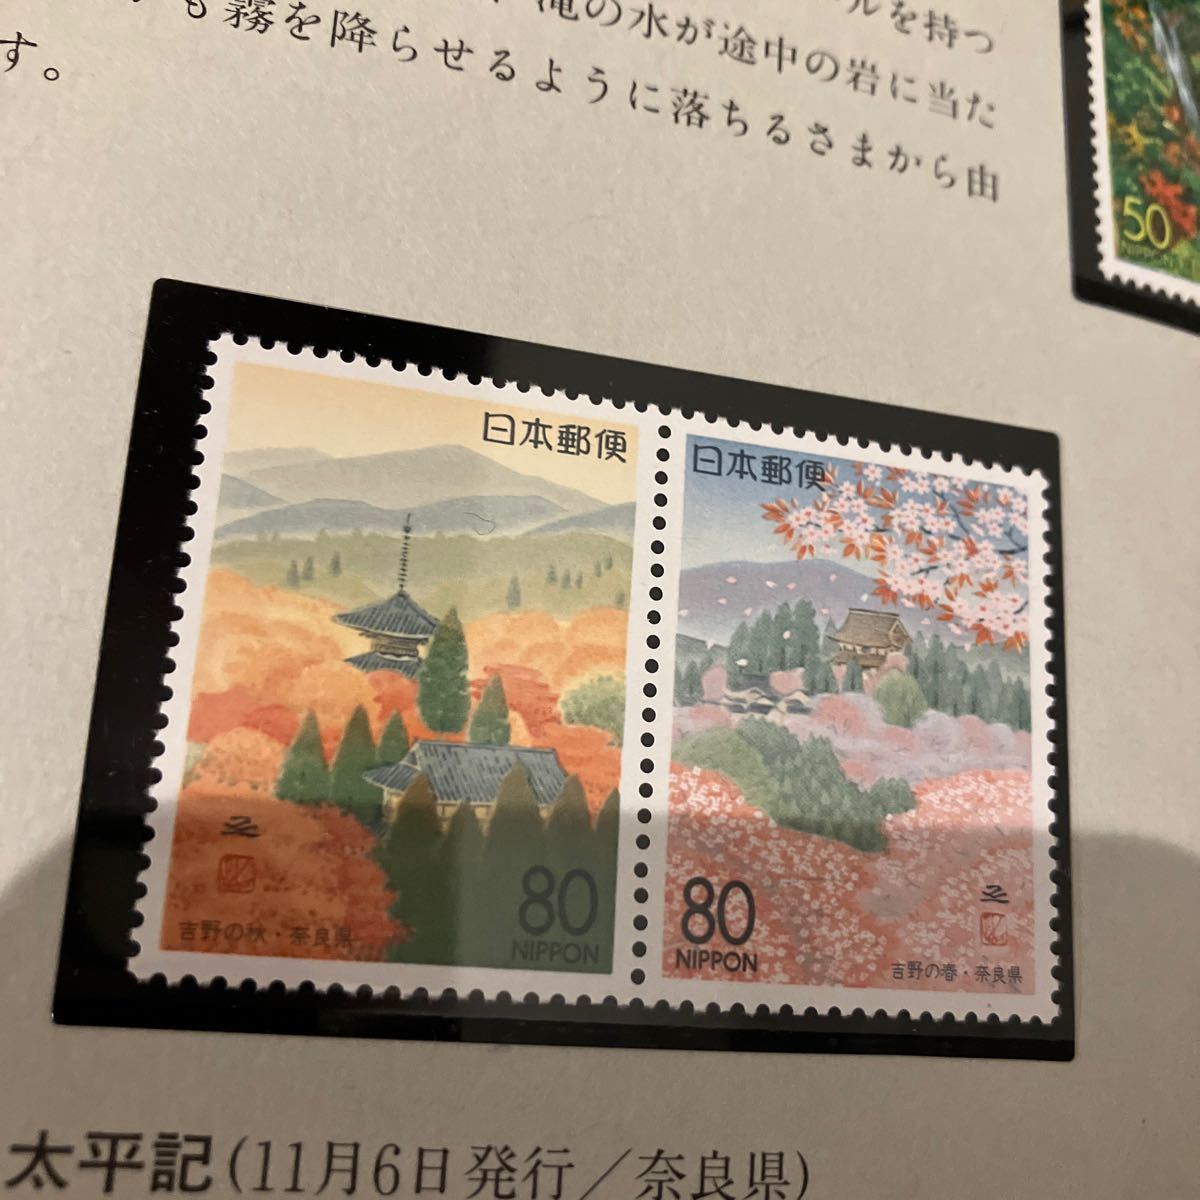 【未使用保管品】ふるさと切手 1995年 切手帳 切手 ブック 全23枚セットの画像10